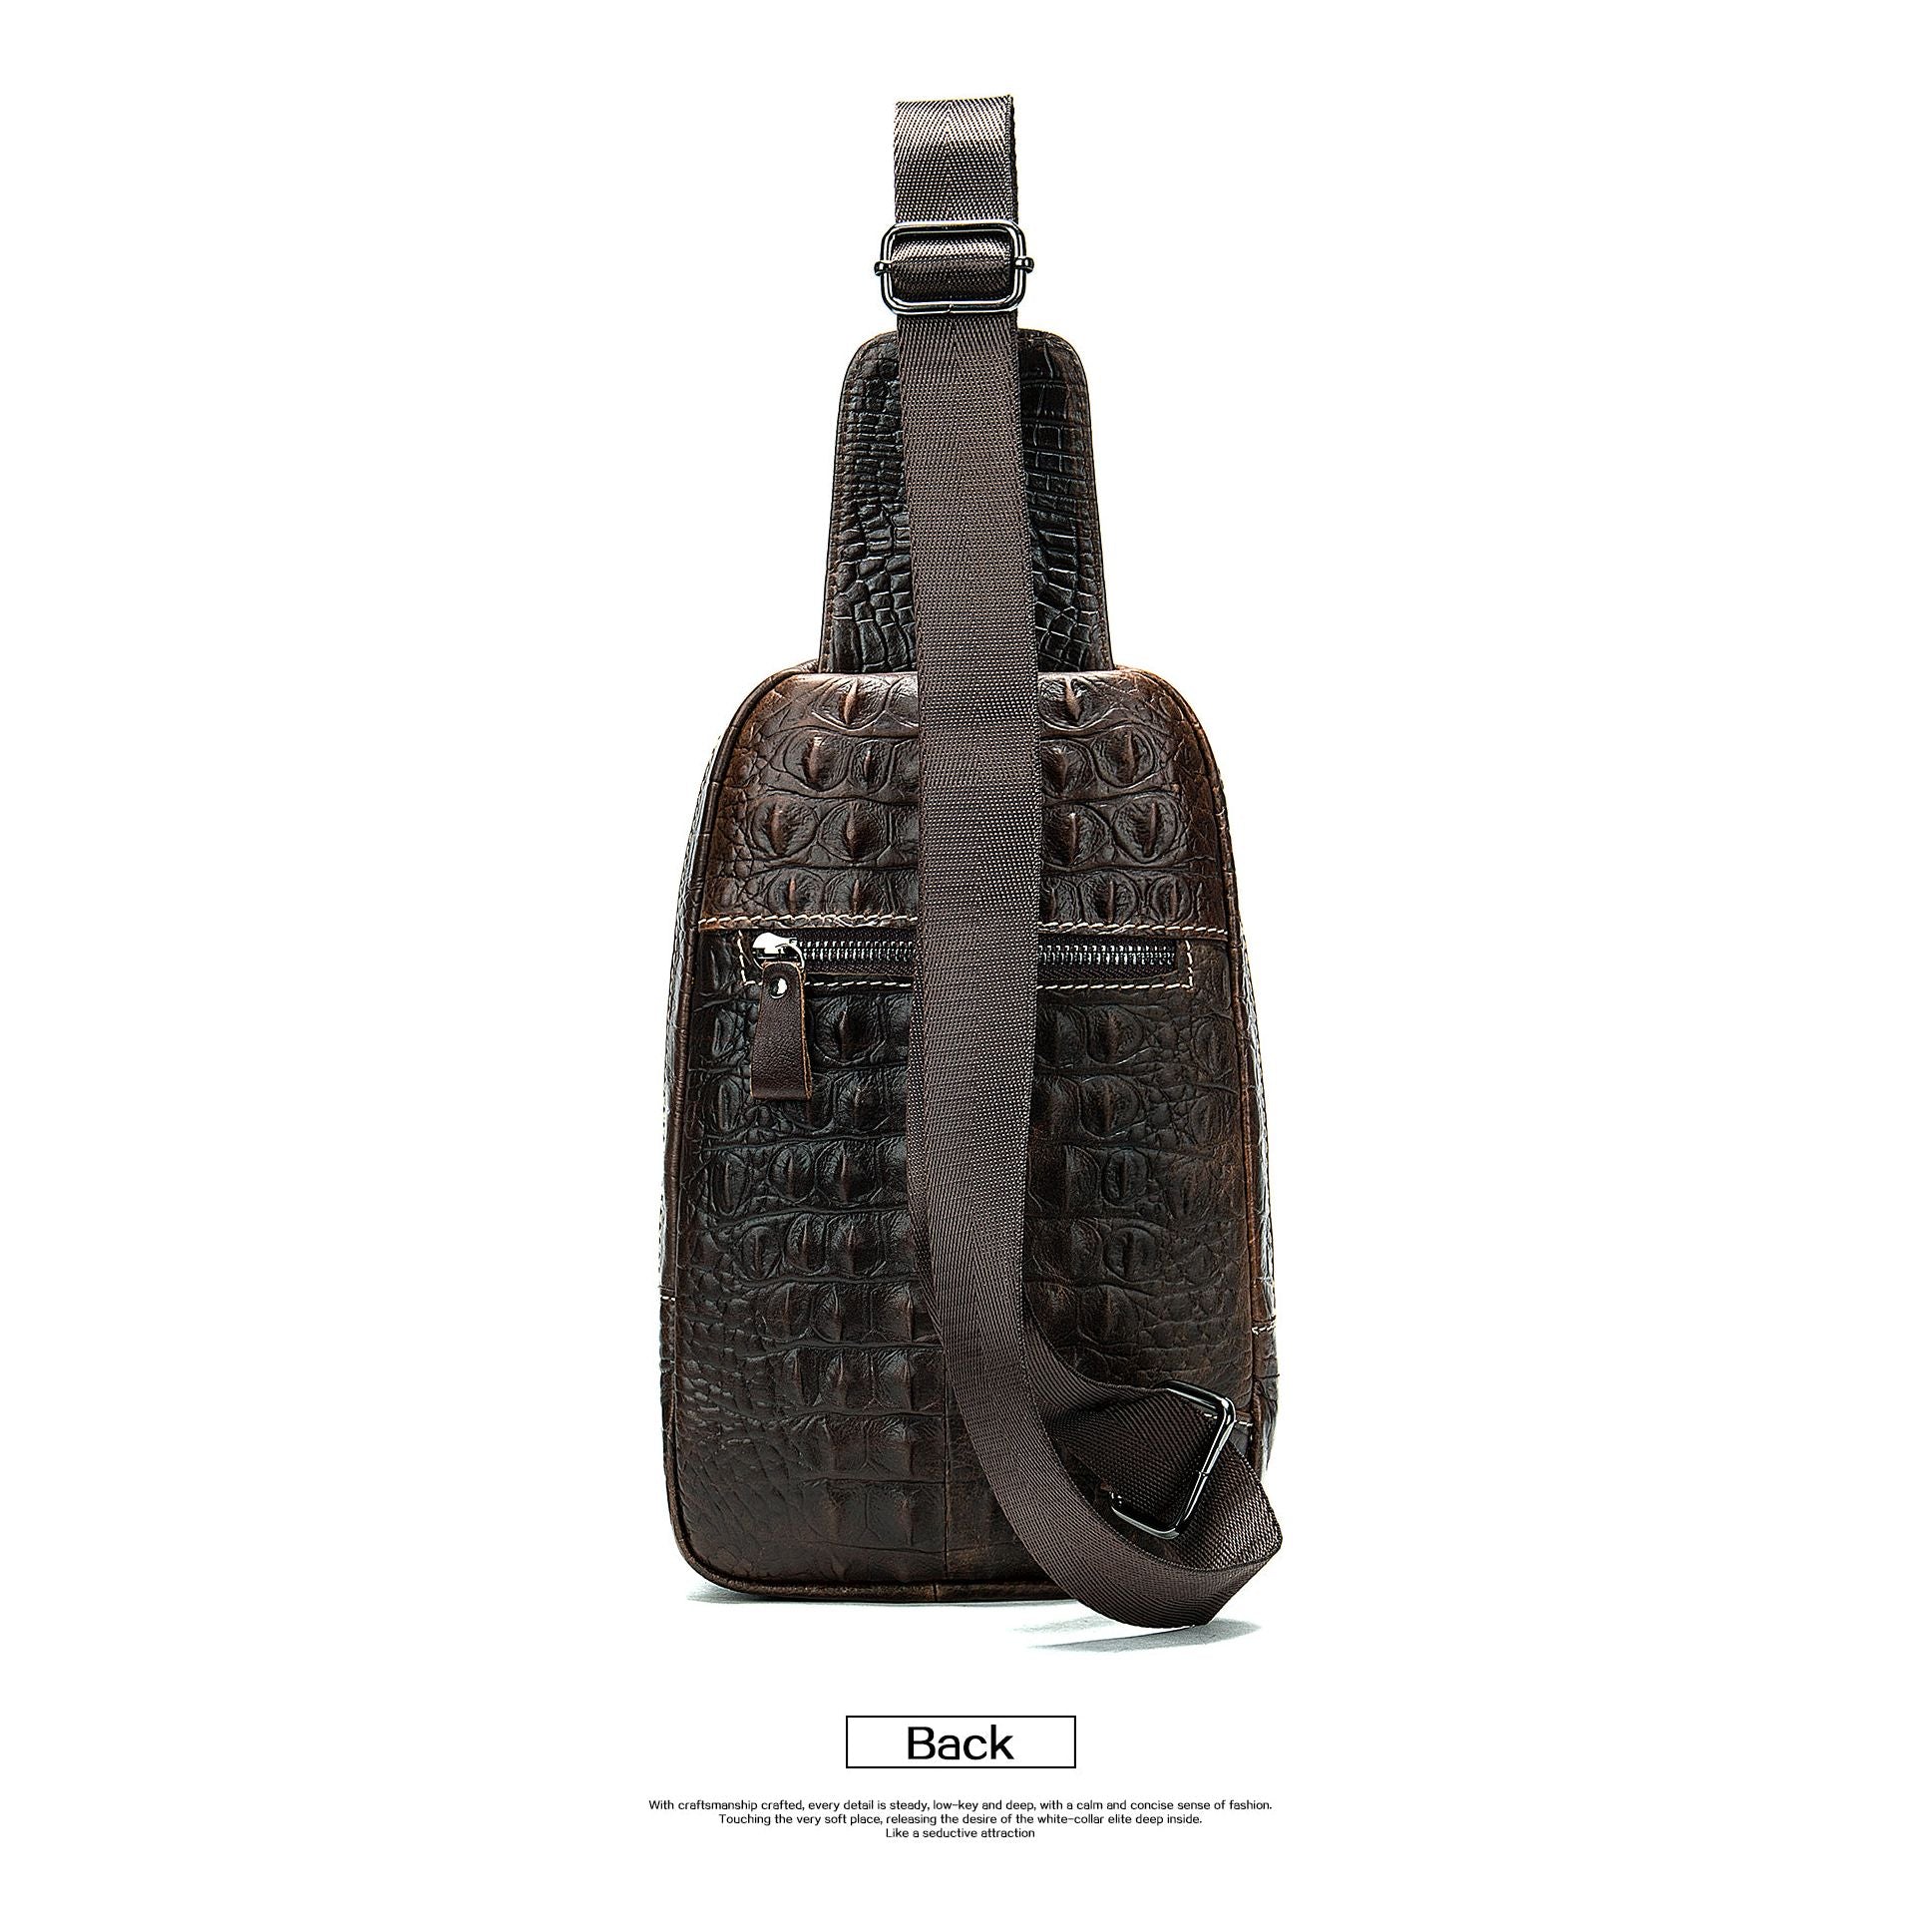 55.00 USD Louis vuitton men's new leather computer bag briefcase large lv